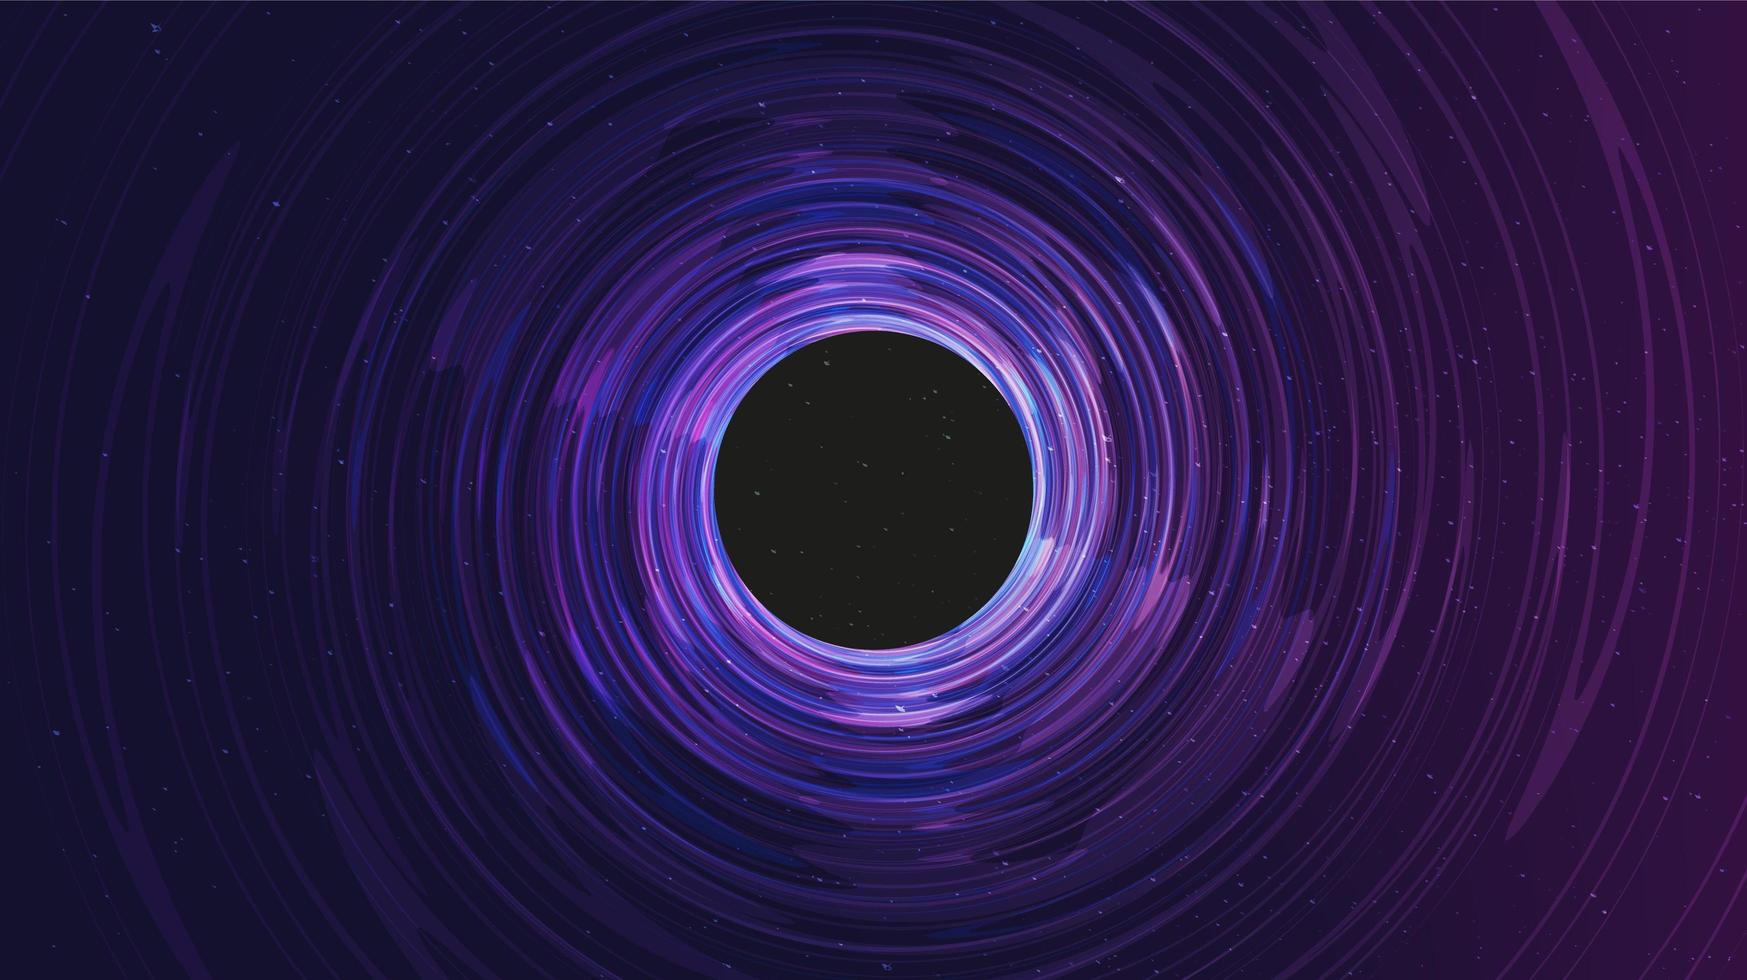 buco nero a spirale ultravioletta su sfondo galassia. progettazione del concetto di pianeta e fisica vettore